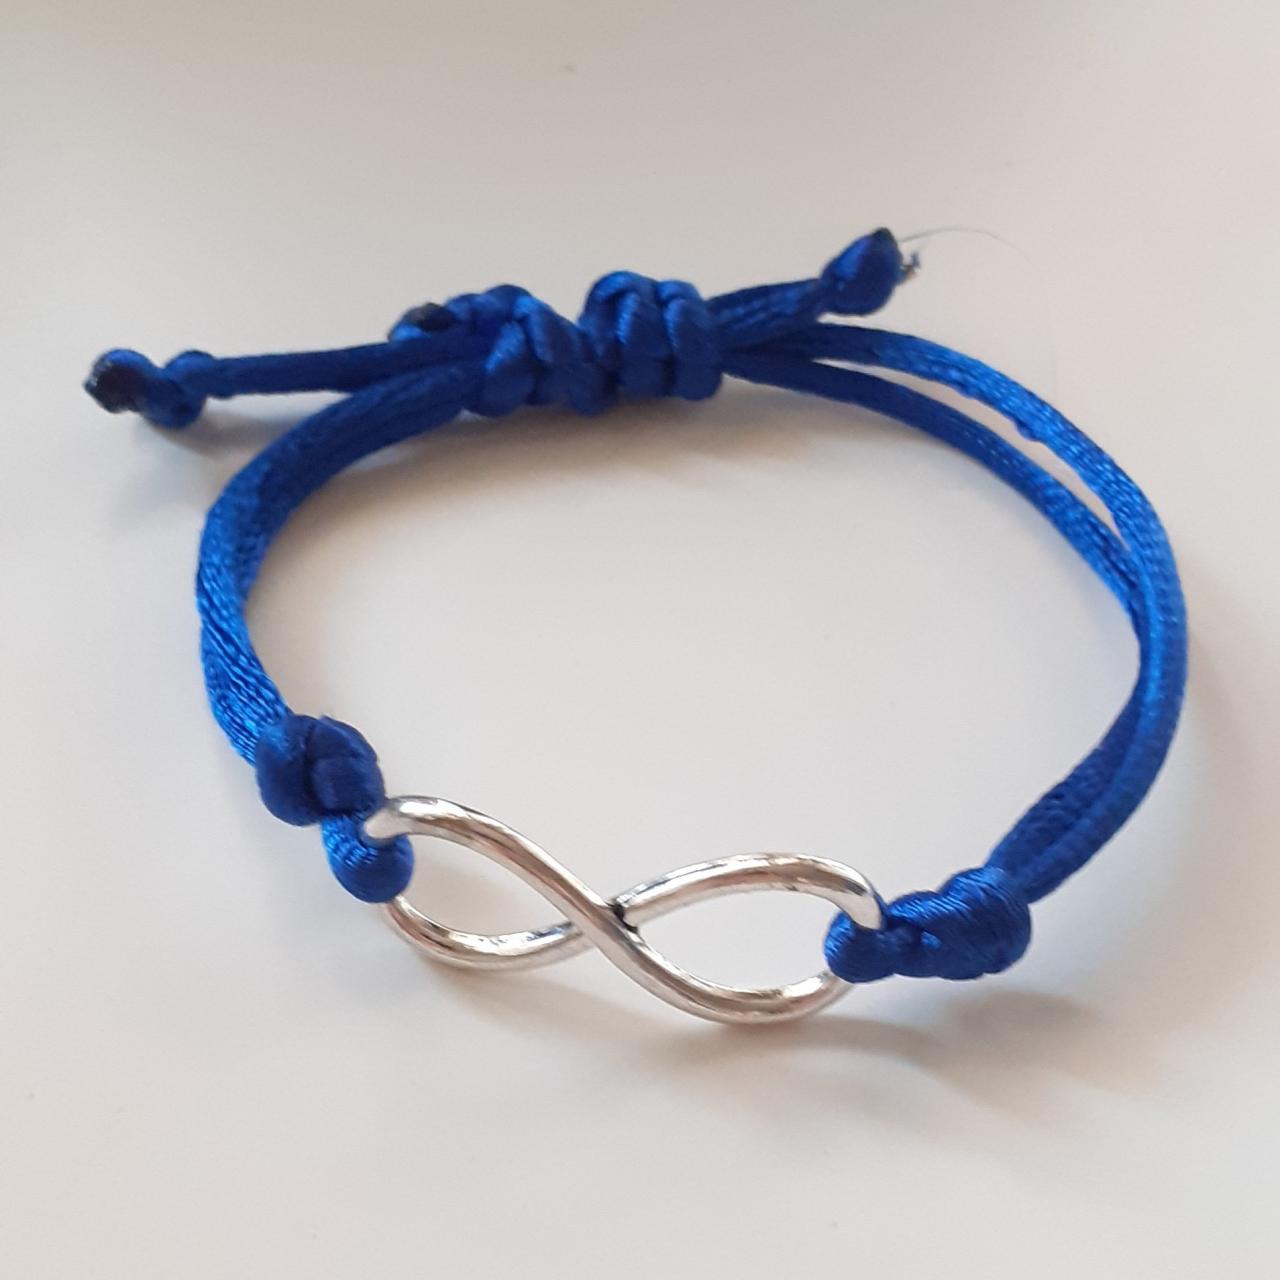 Thread Bracelet With Pendant Infinity